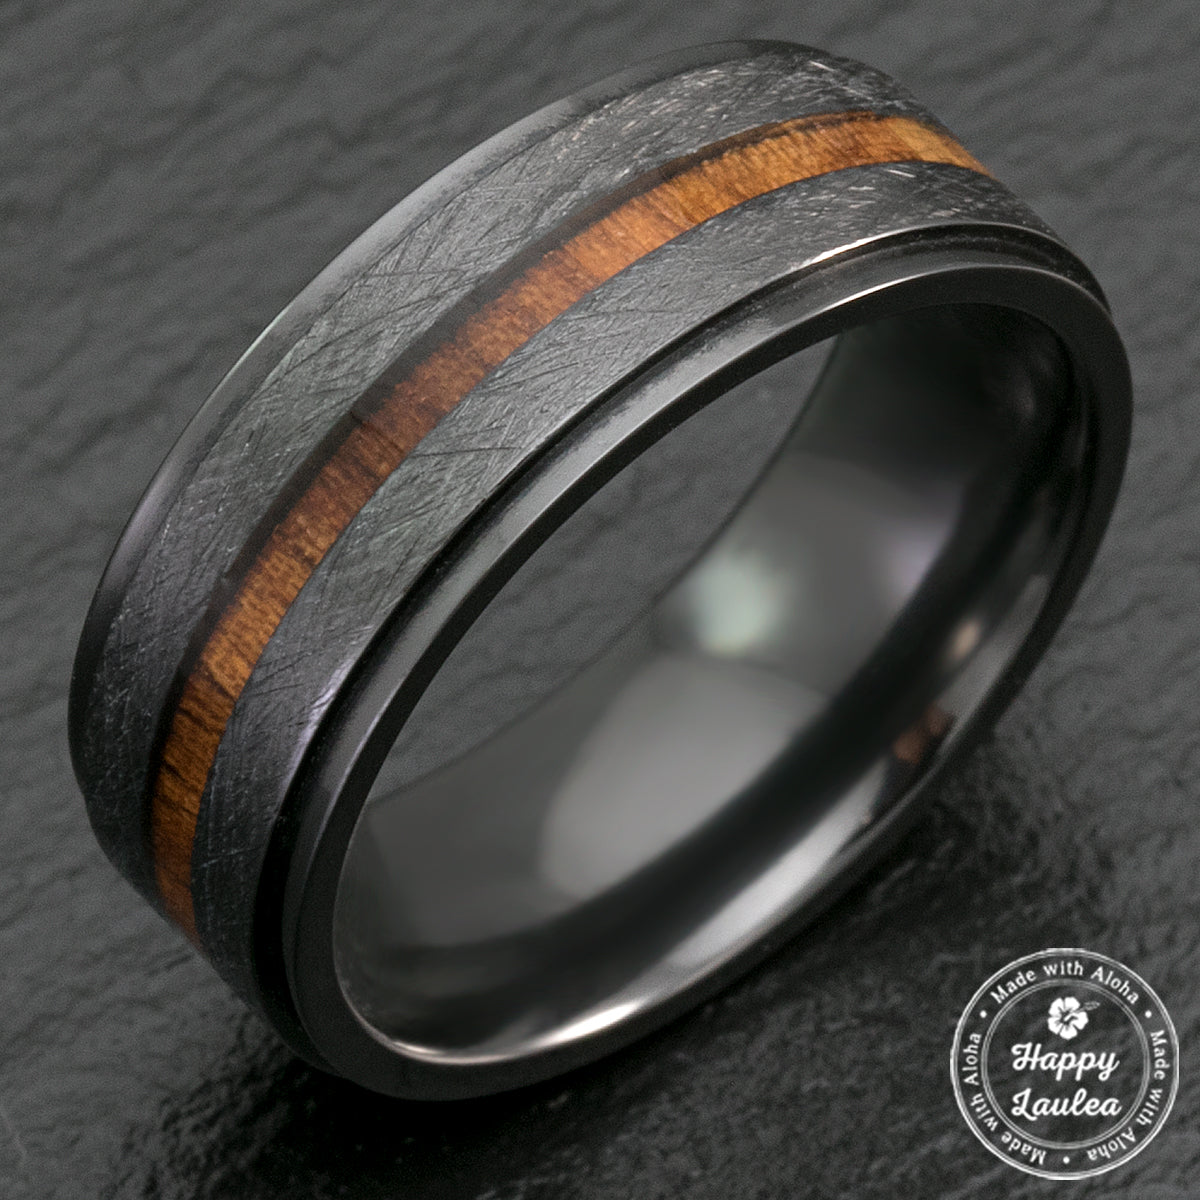 Black Zirconium Step Edge Ring with Hawaiian Koa Wood Inlay - 8mm, Flat Shape, Comfort Fitment